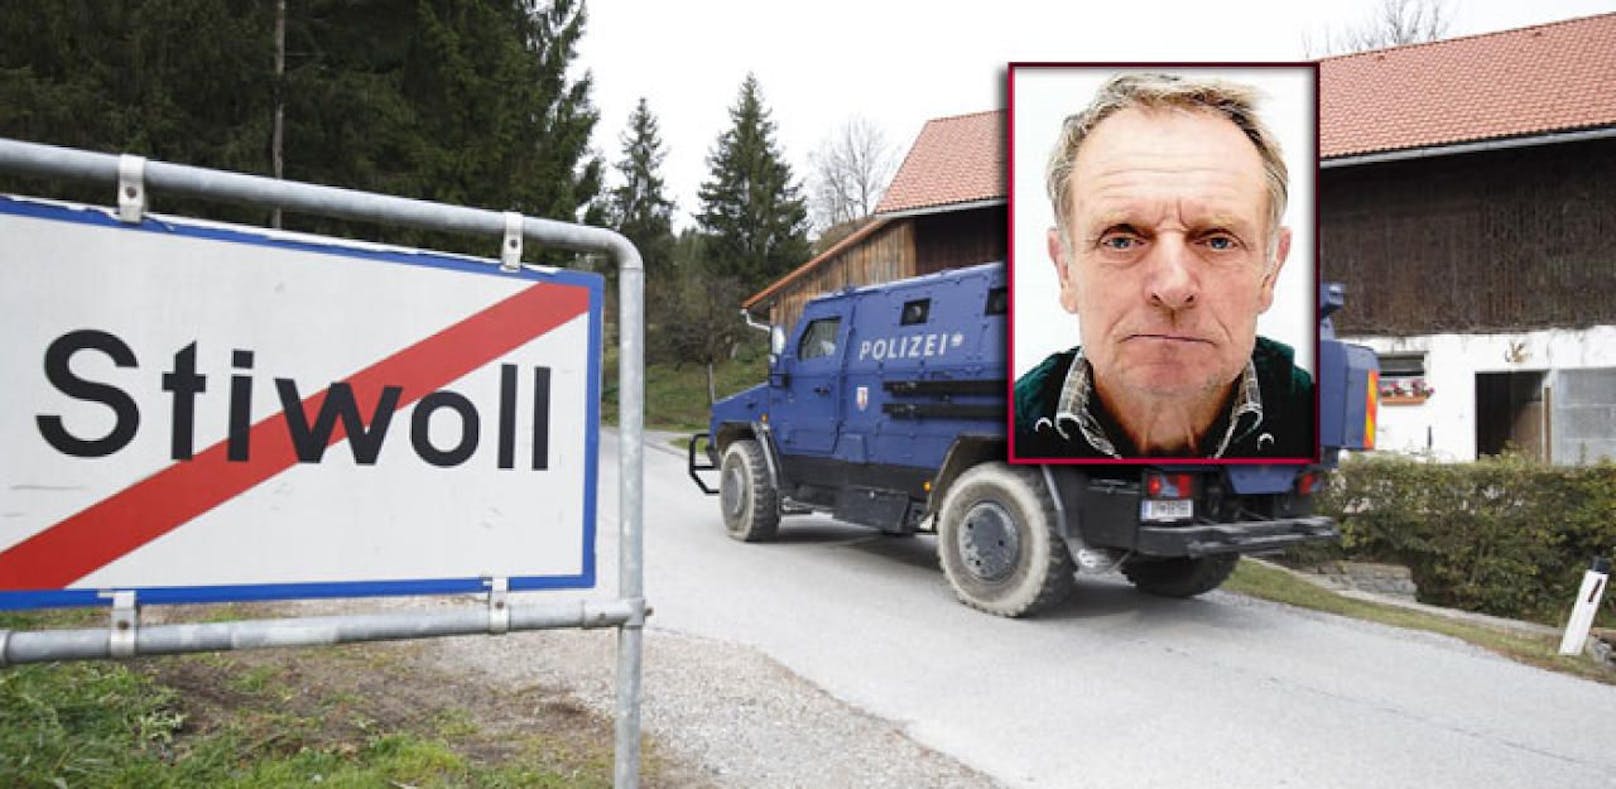 5.000 Euro Belohnung auf Stiwoll-Killer ausgesetzt